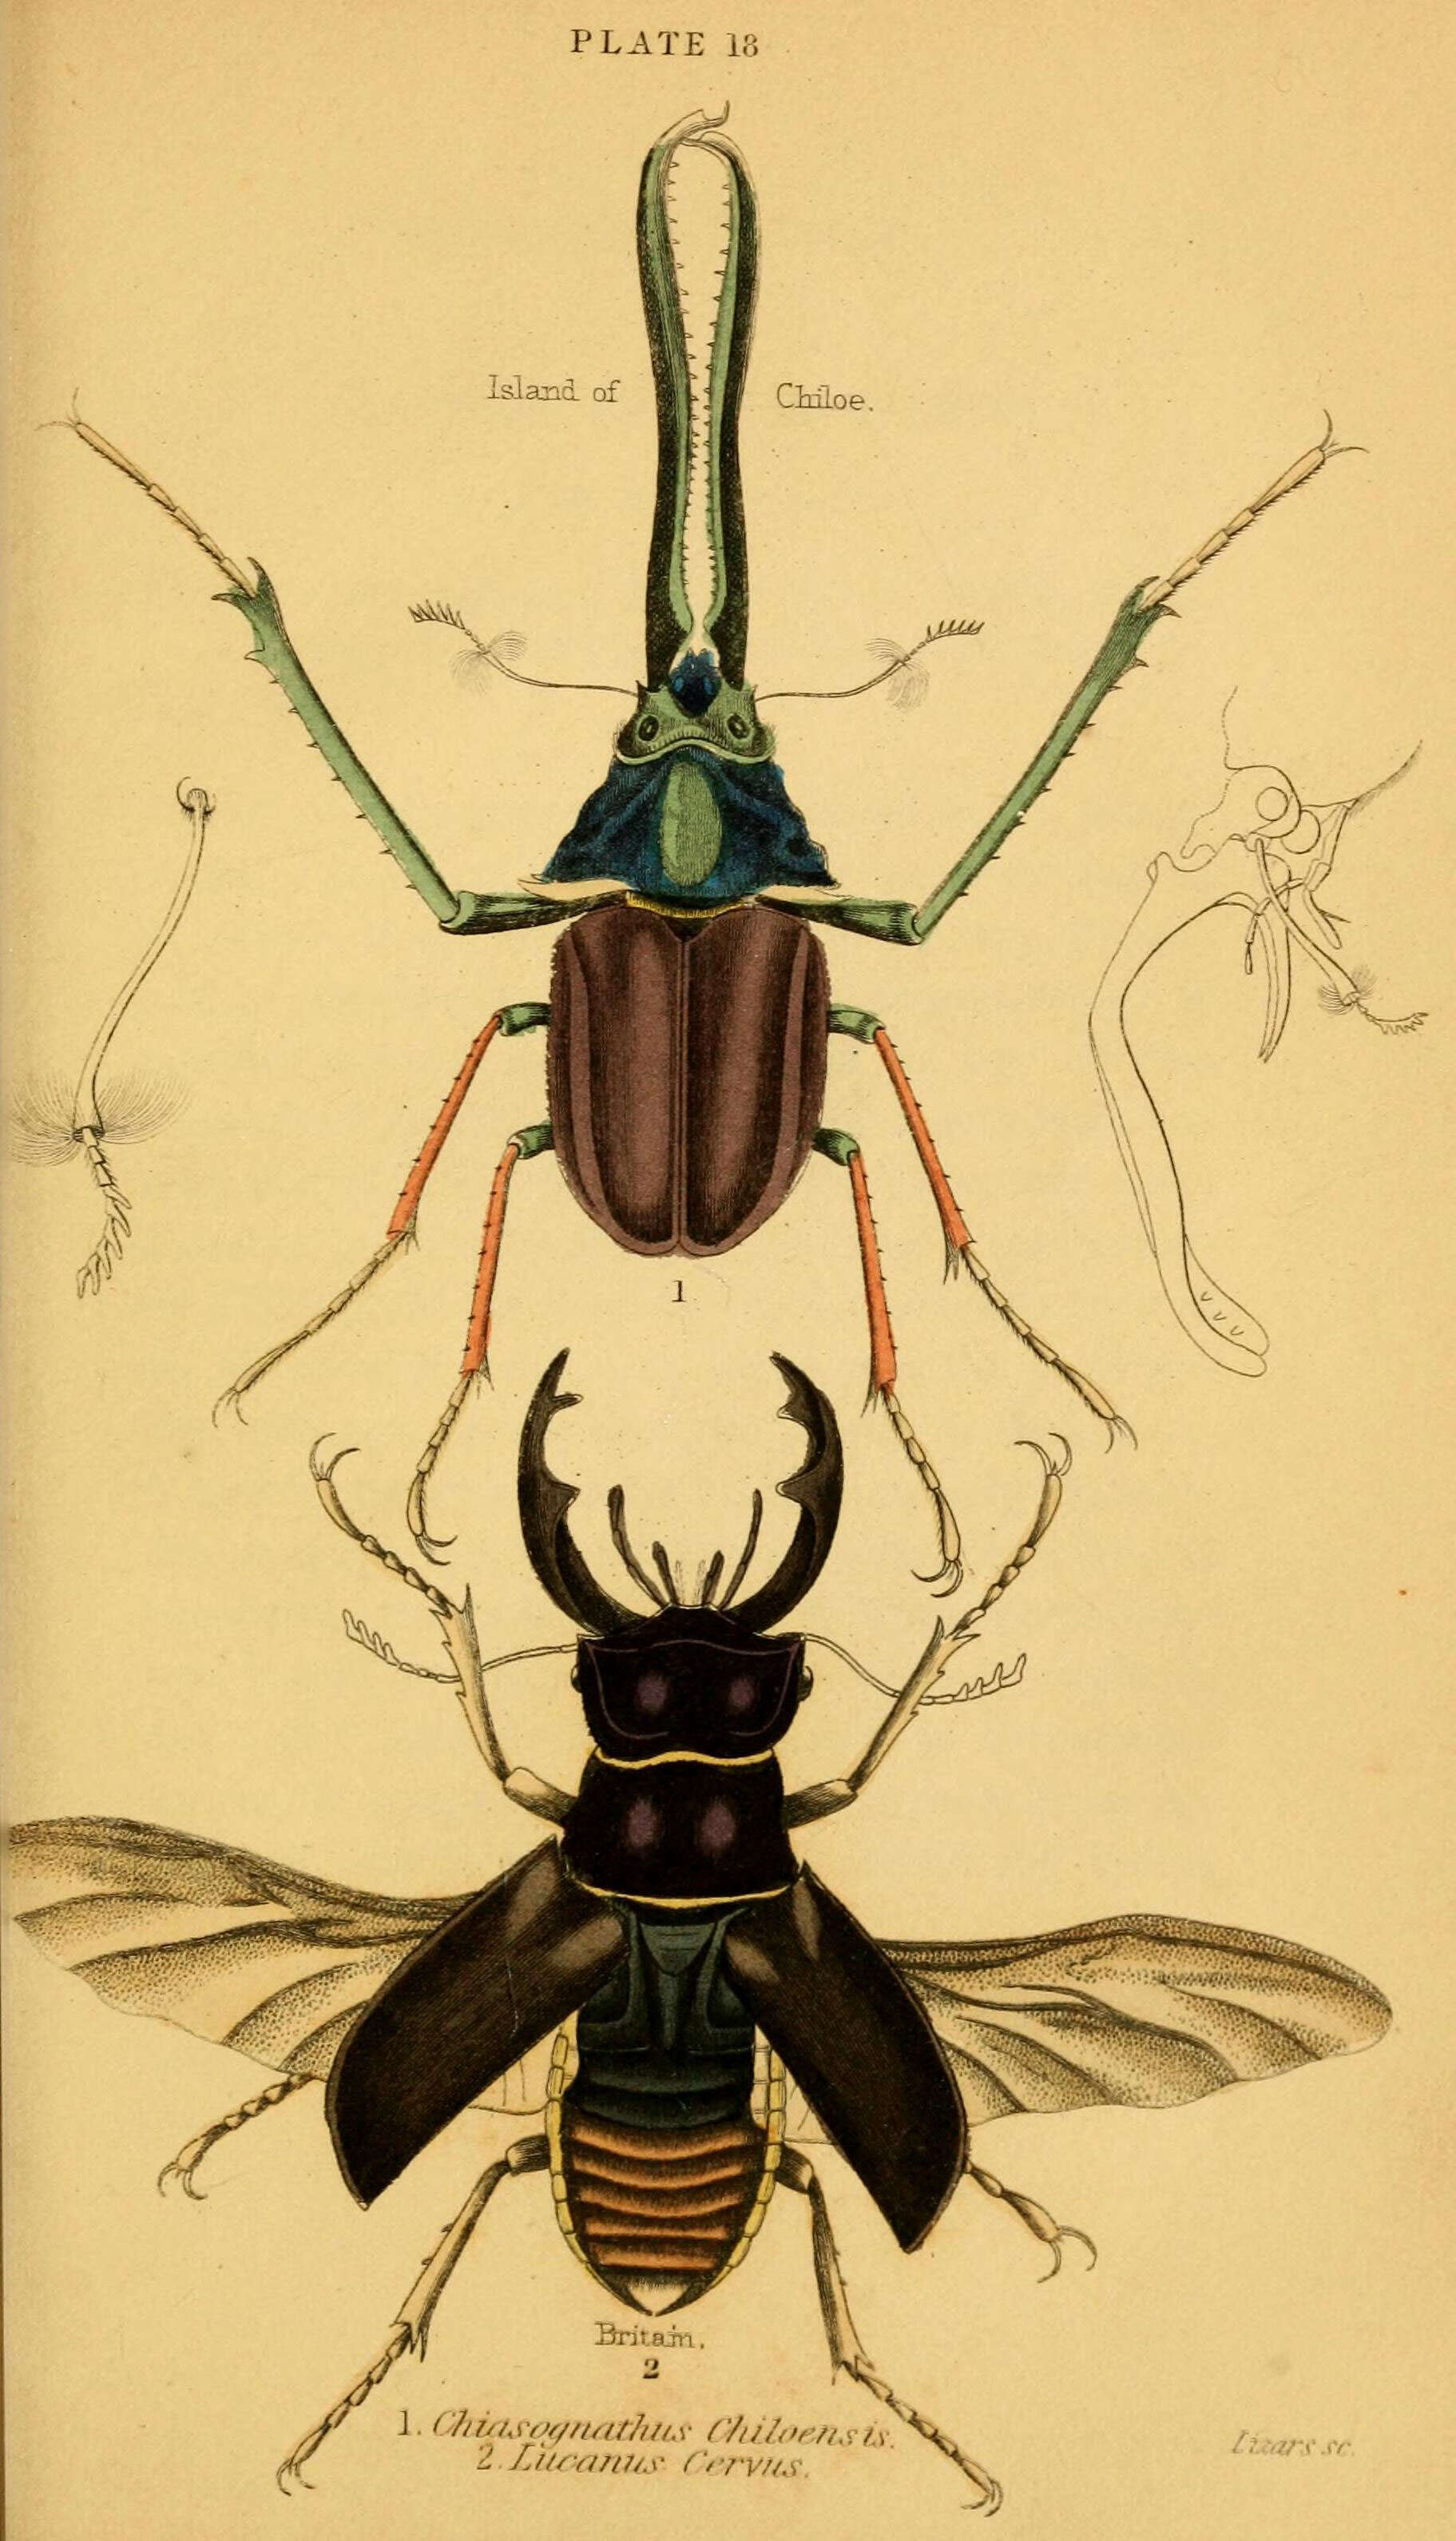 Image of Chiasognathus grantii Stephens 1831